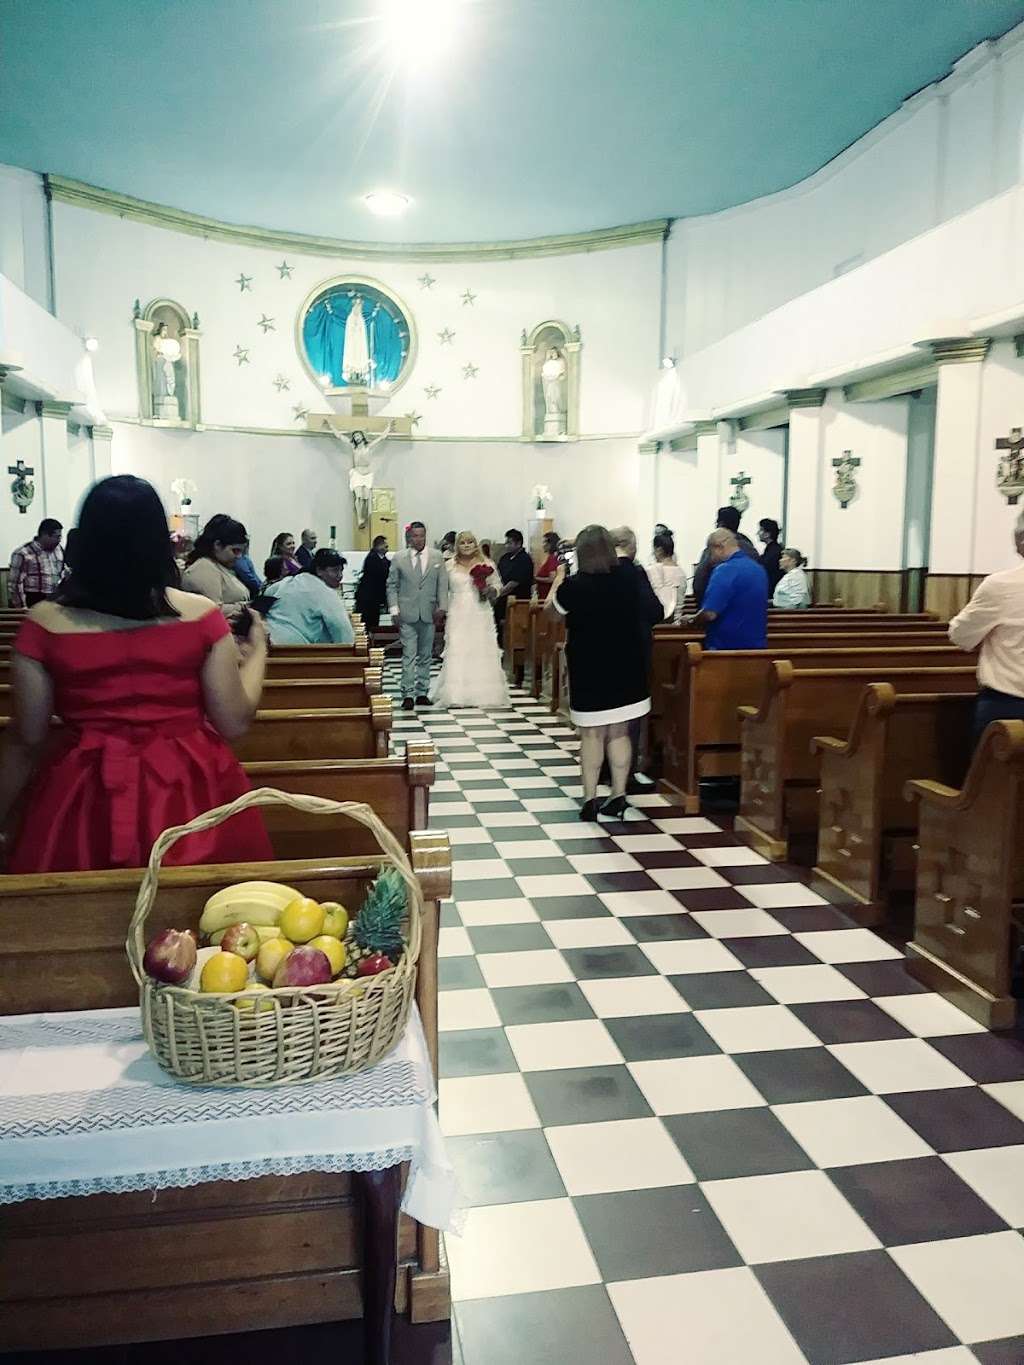 Parroquia de Nuestra Señora de Fatima | Veracruz 3170, Fraccionamiento, México, 22056 Tijuana, B.C., Mexico | Phone: 664 634 4166